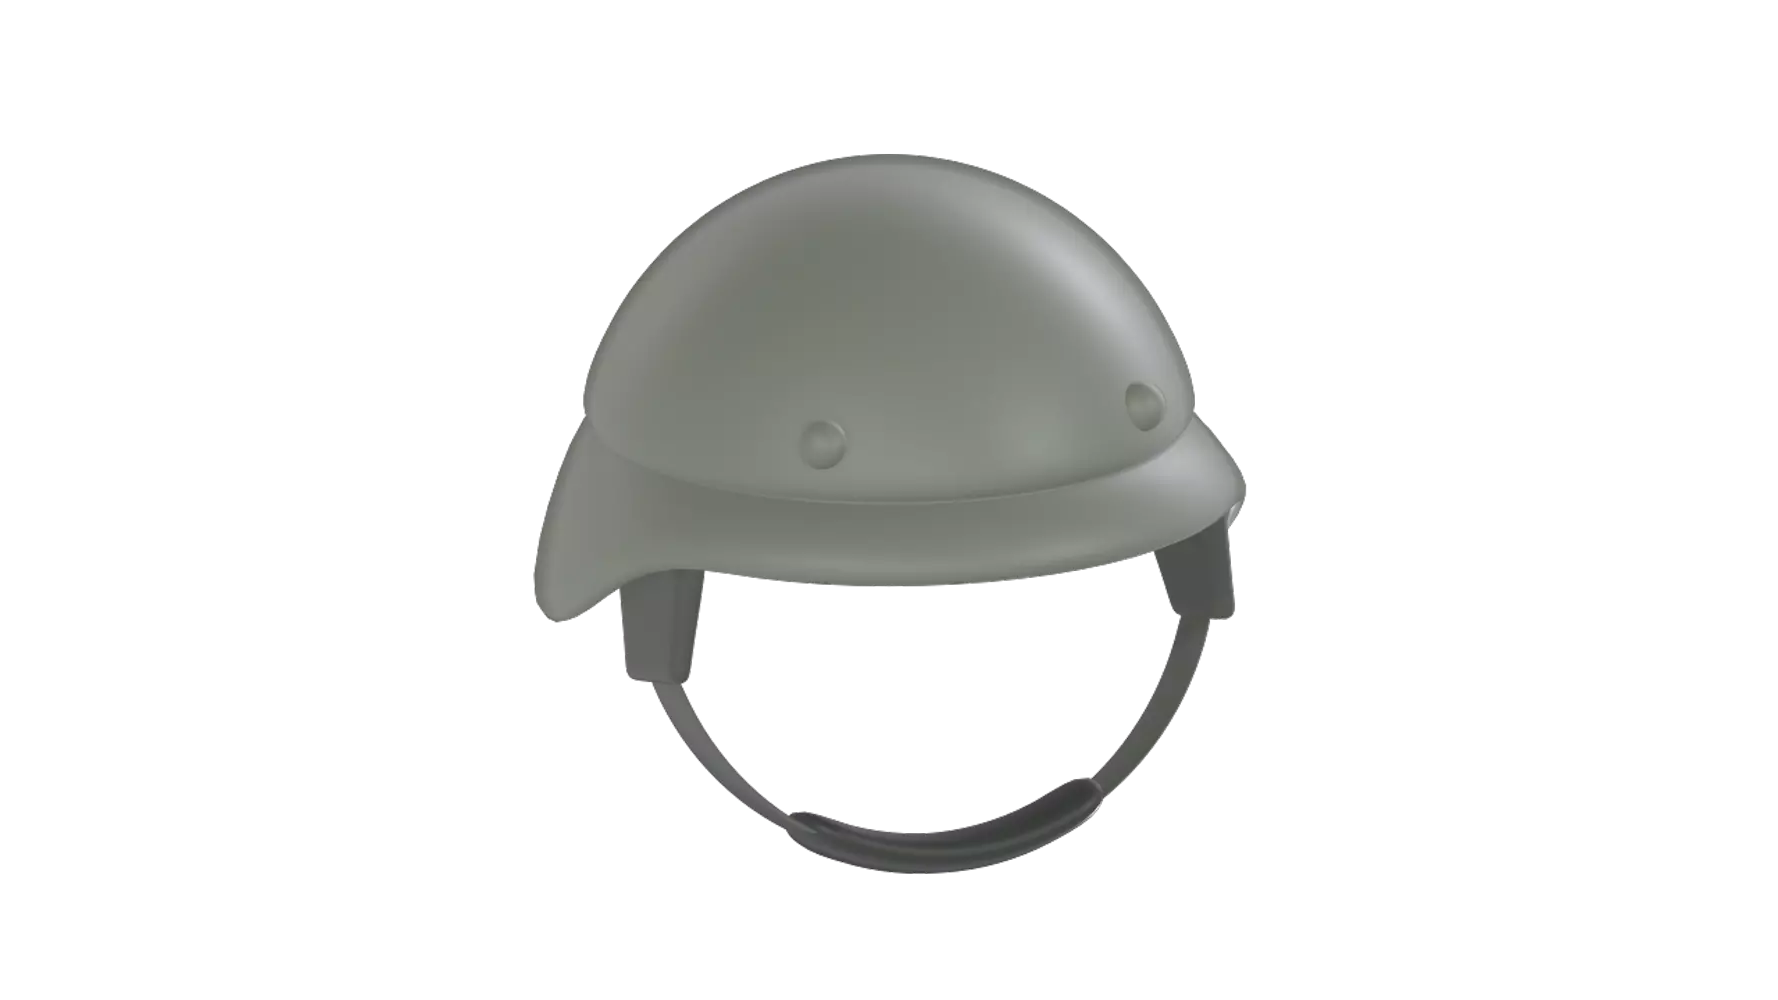 Soldier Helmet 3D Graphic